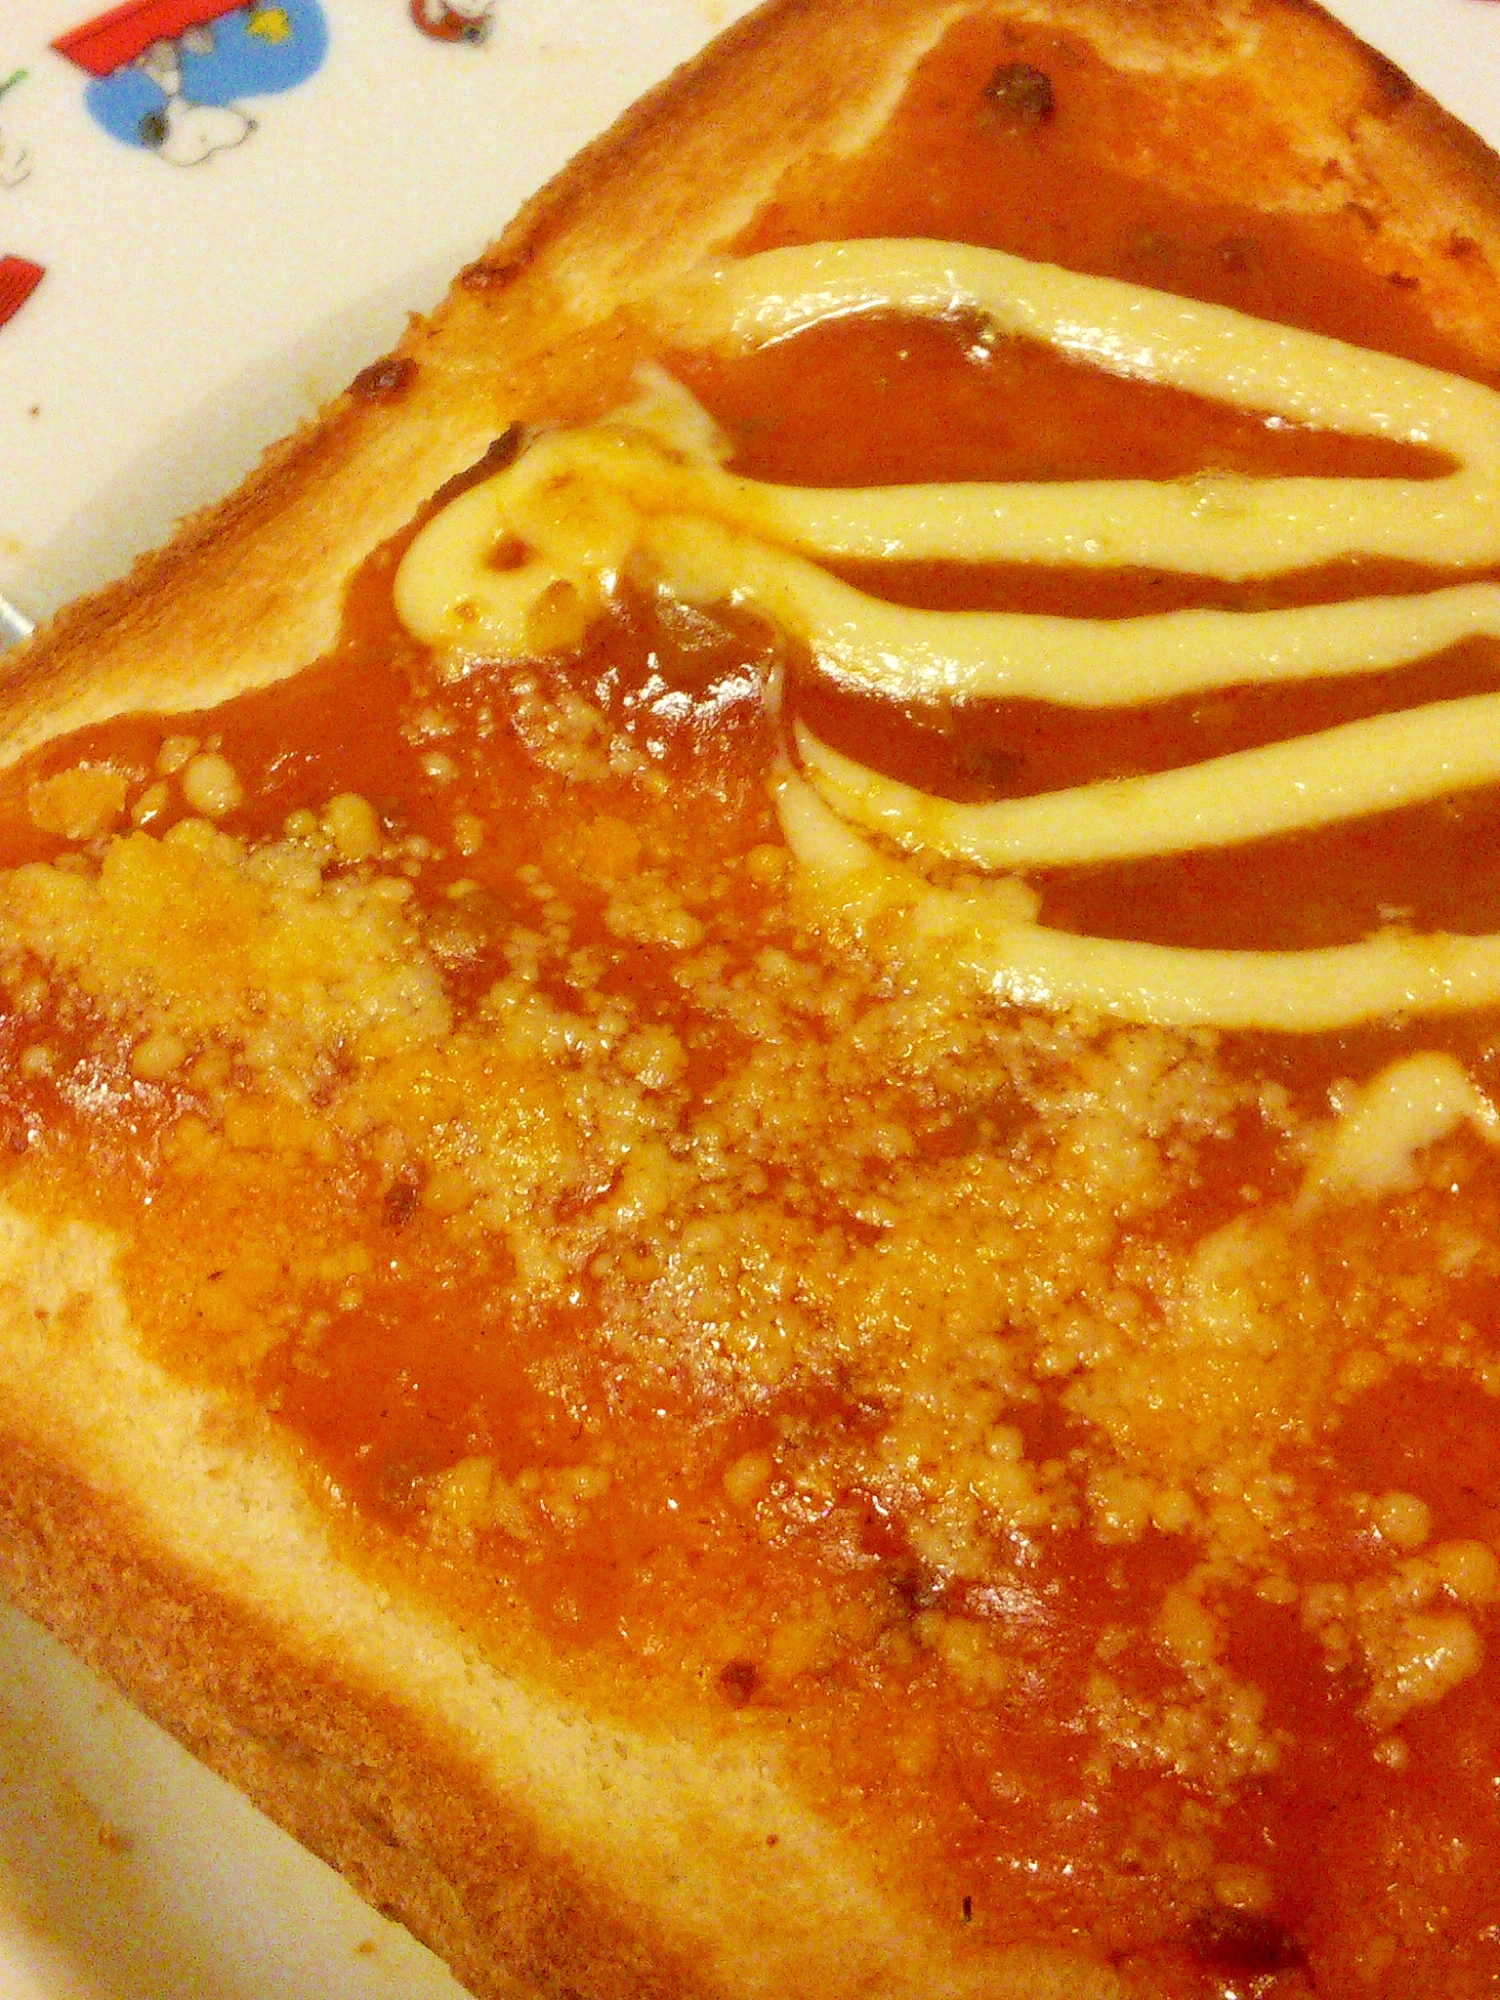 マヨネーズと粉チーズのよくばりミートソーストースト